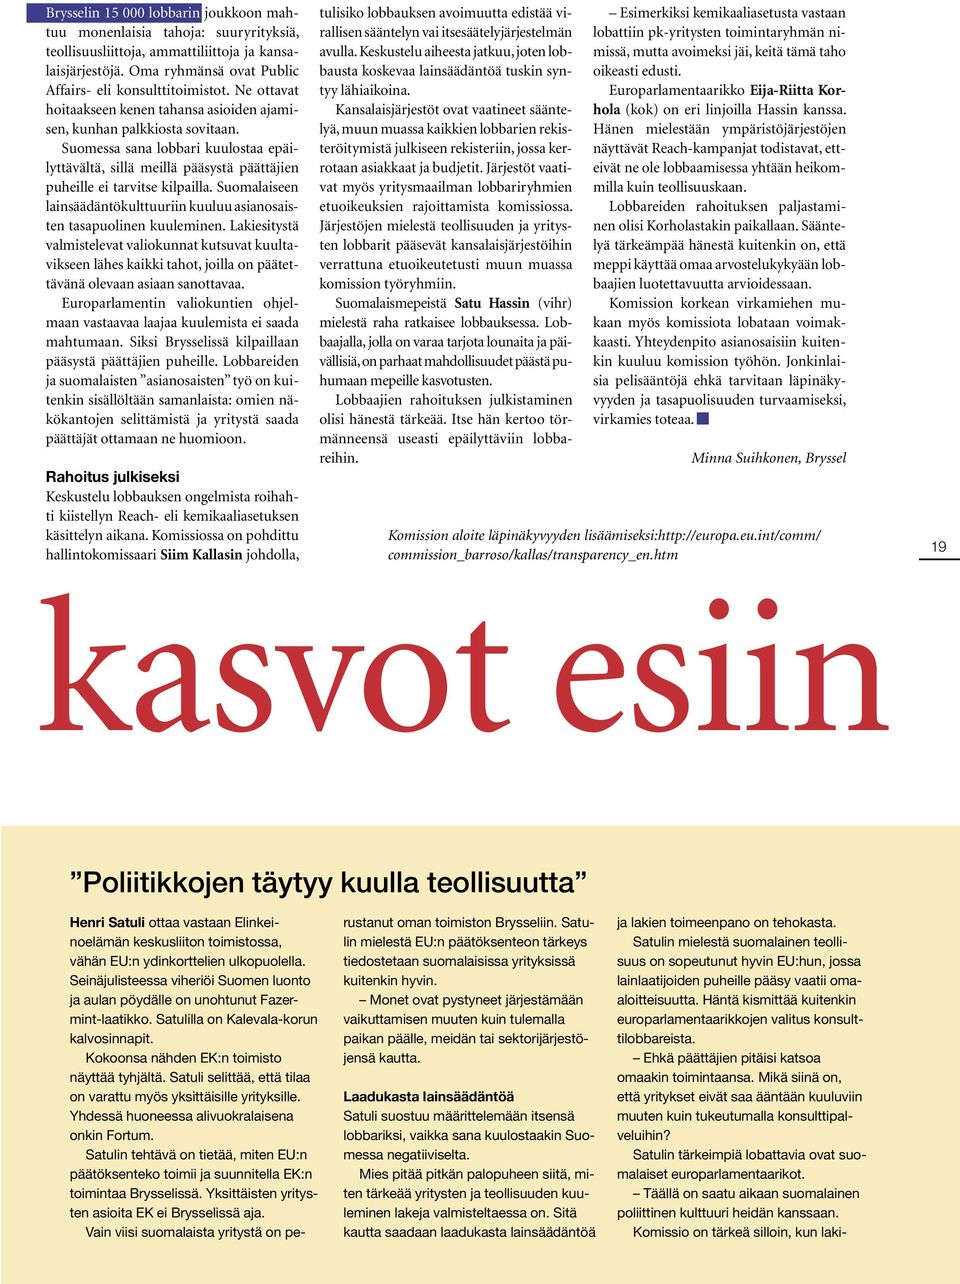 Suomalaiseen lainsäädäntökulttuuriin kuuluu asianosaisten tasapuolinen kuuleminen.